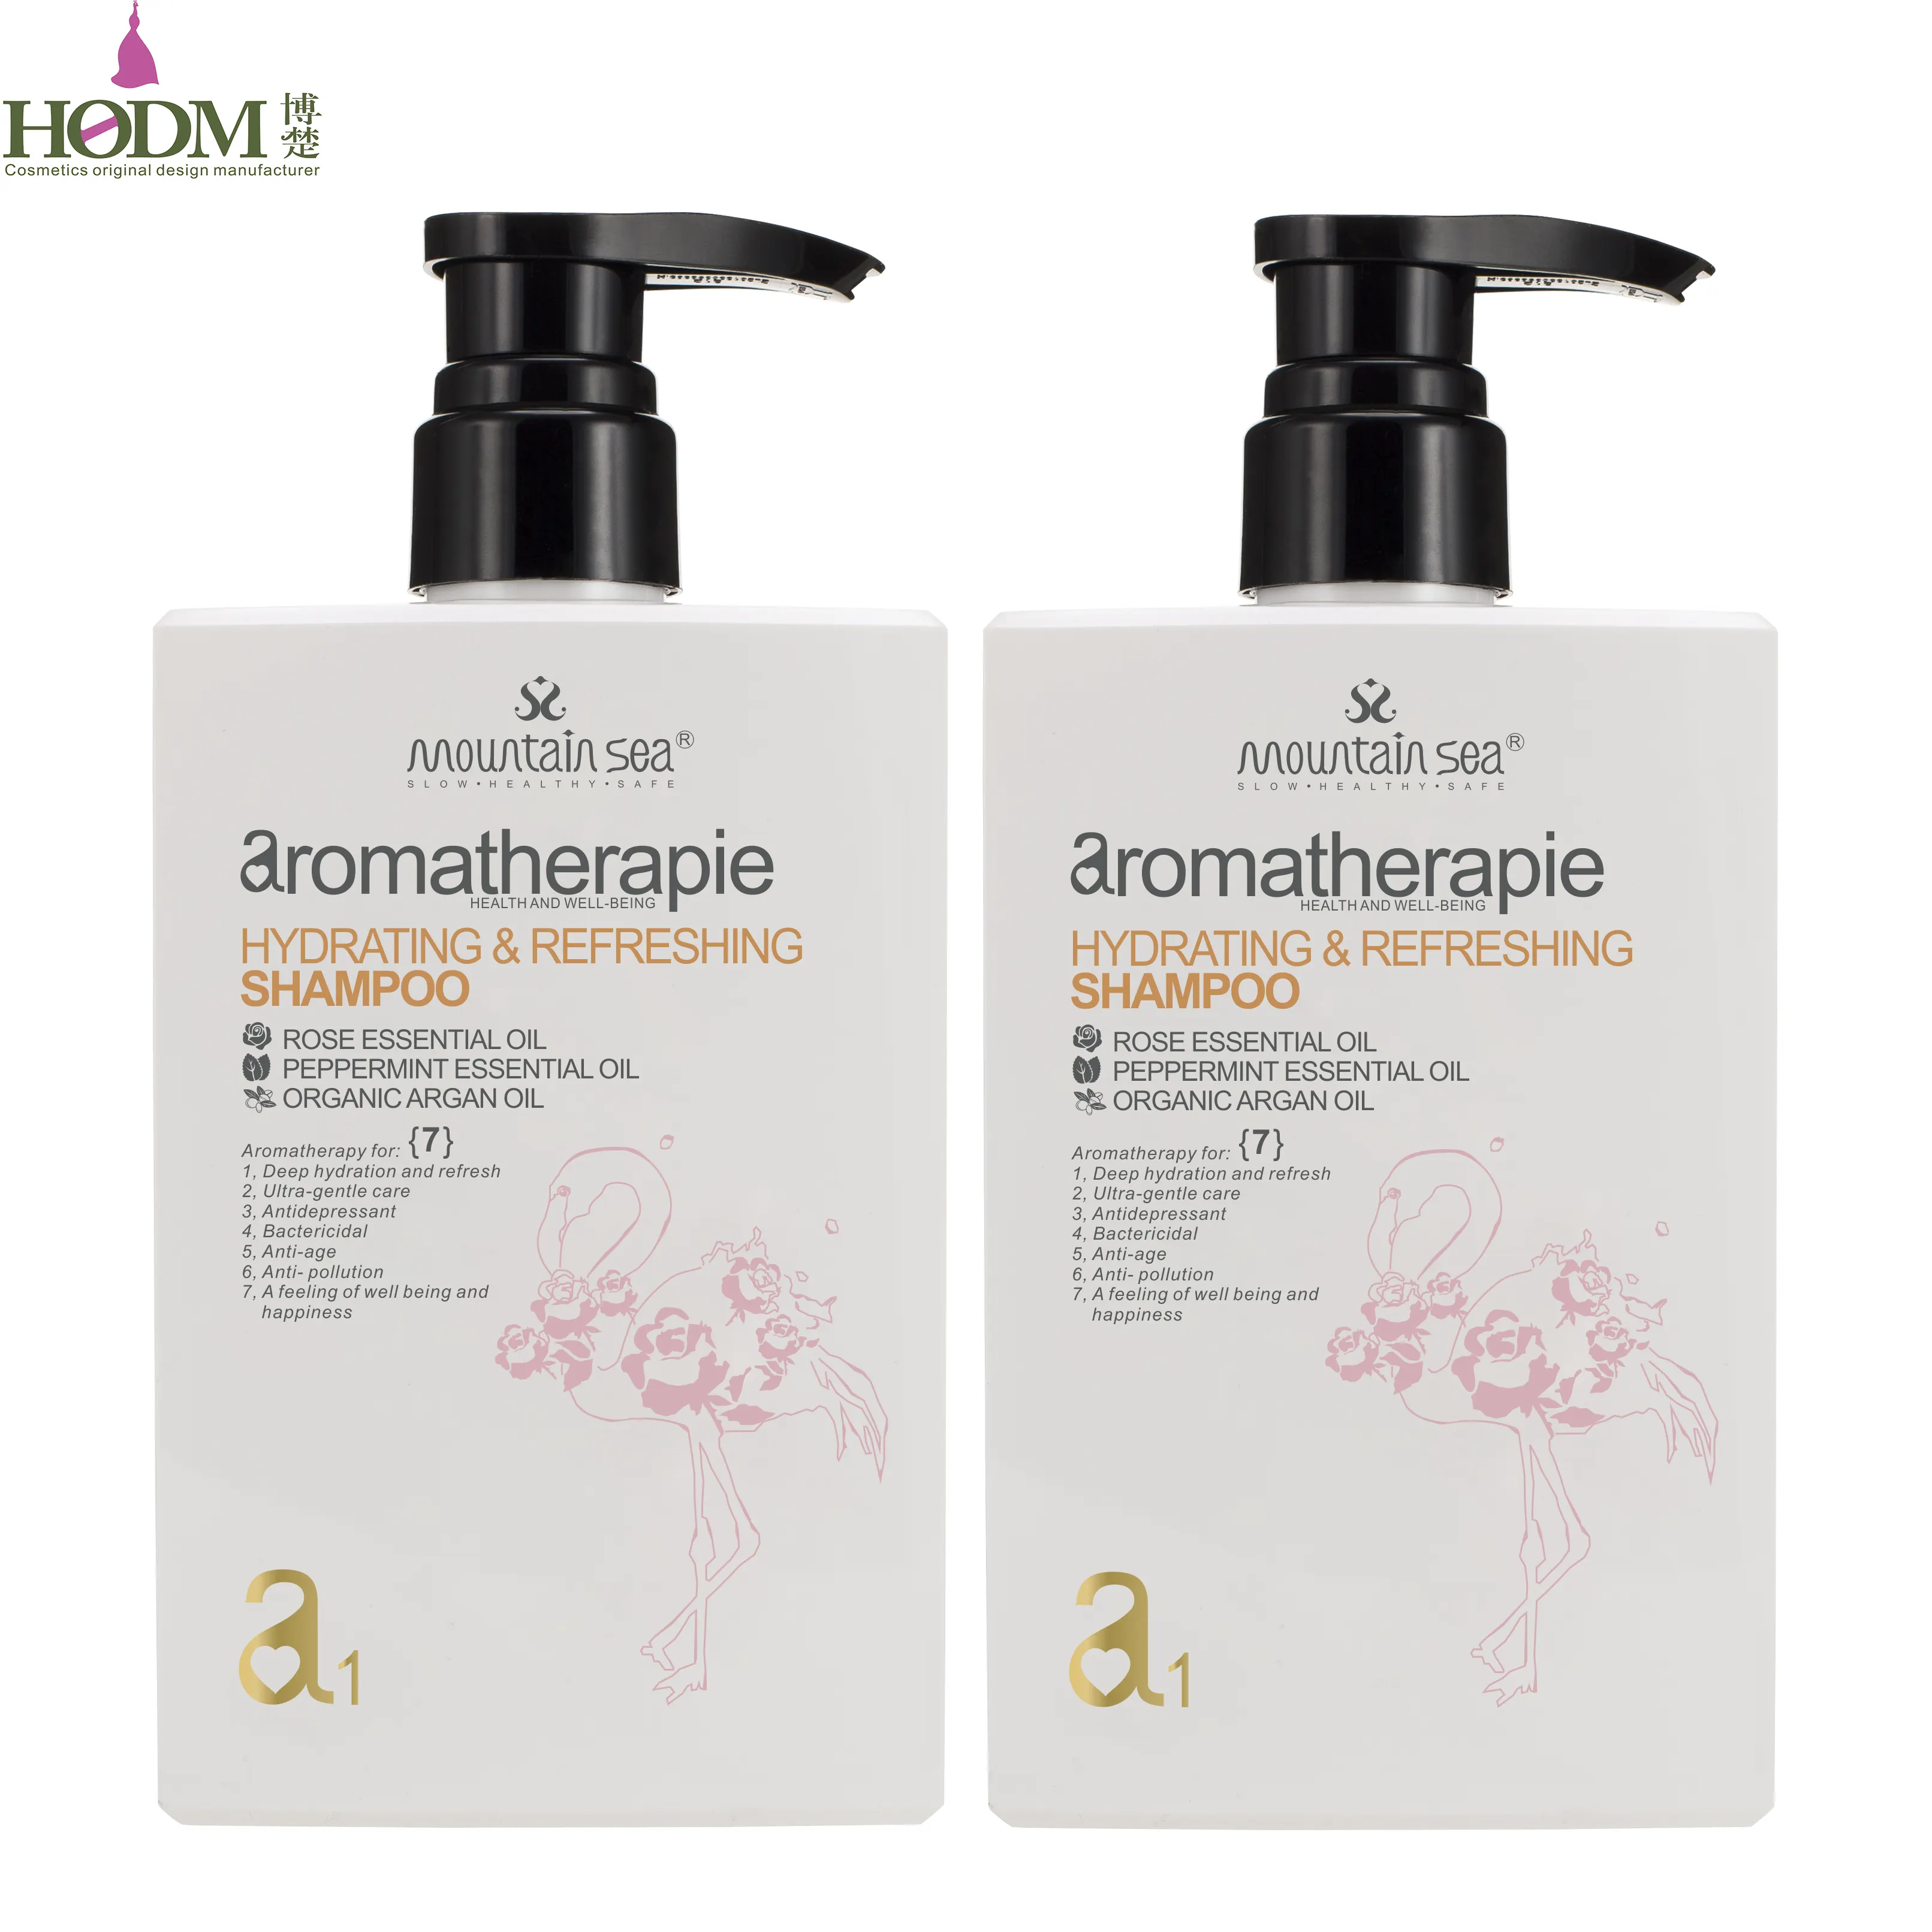 HODM MOUNTAIN SEA Glätten und Befeuchten des Shampoo Haar Täglicher Gebrauch mit natürlichem Rosenöl-Shampoo